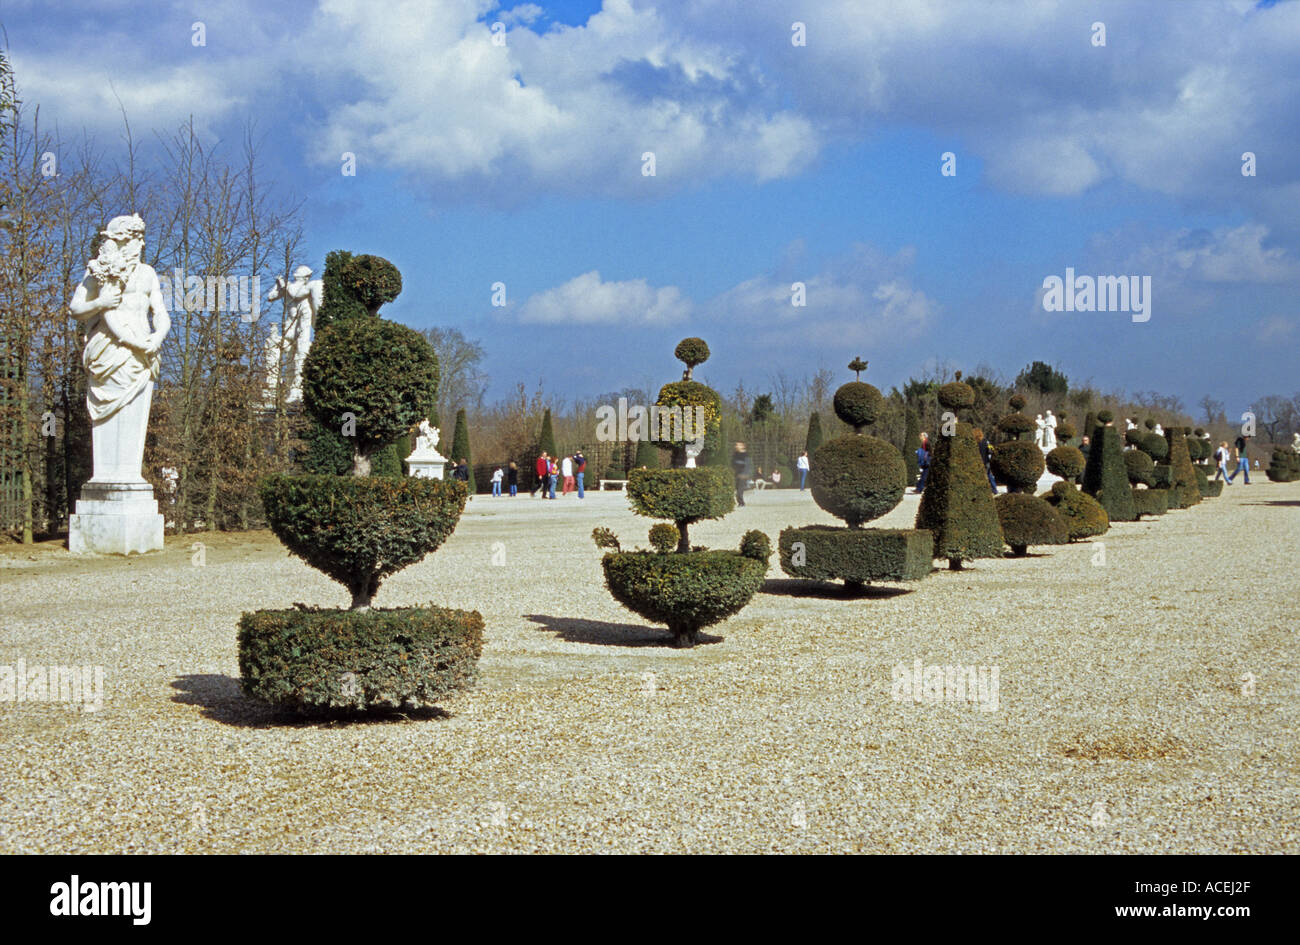 Dans les jardins de topiaires Chateau de Versailles près de Paris France Banque D'Images